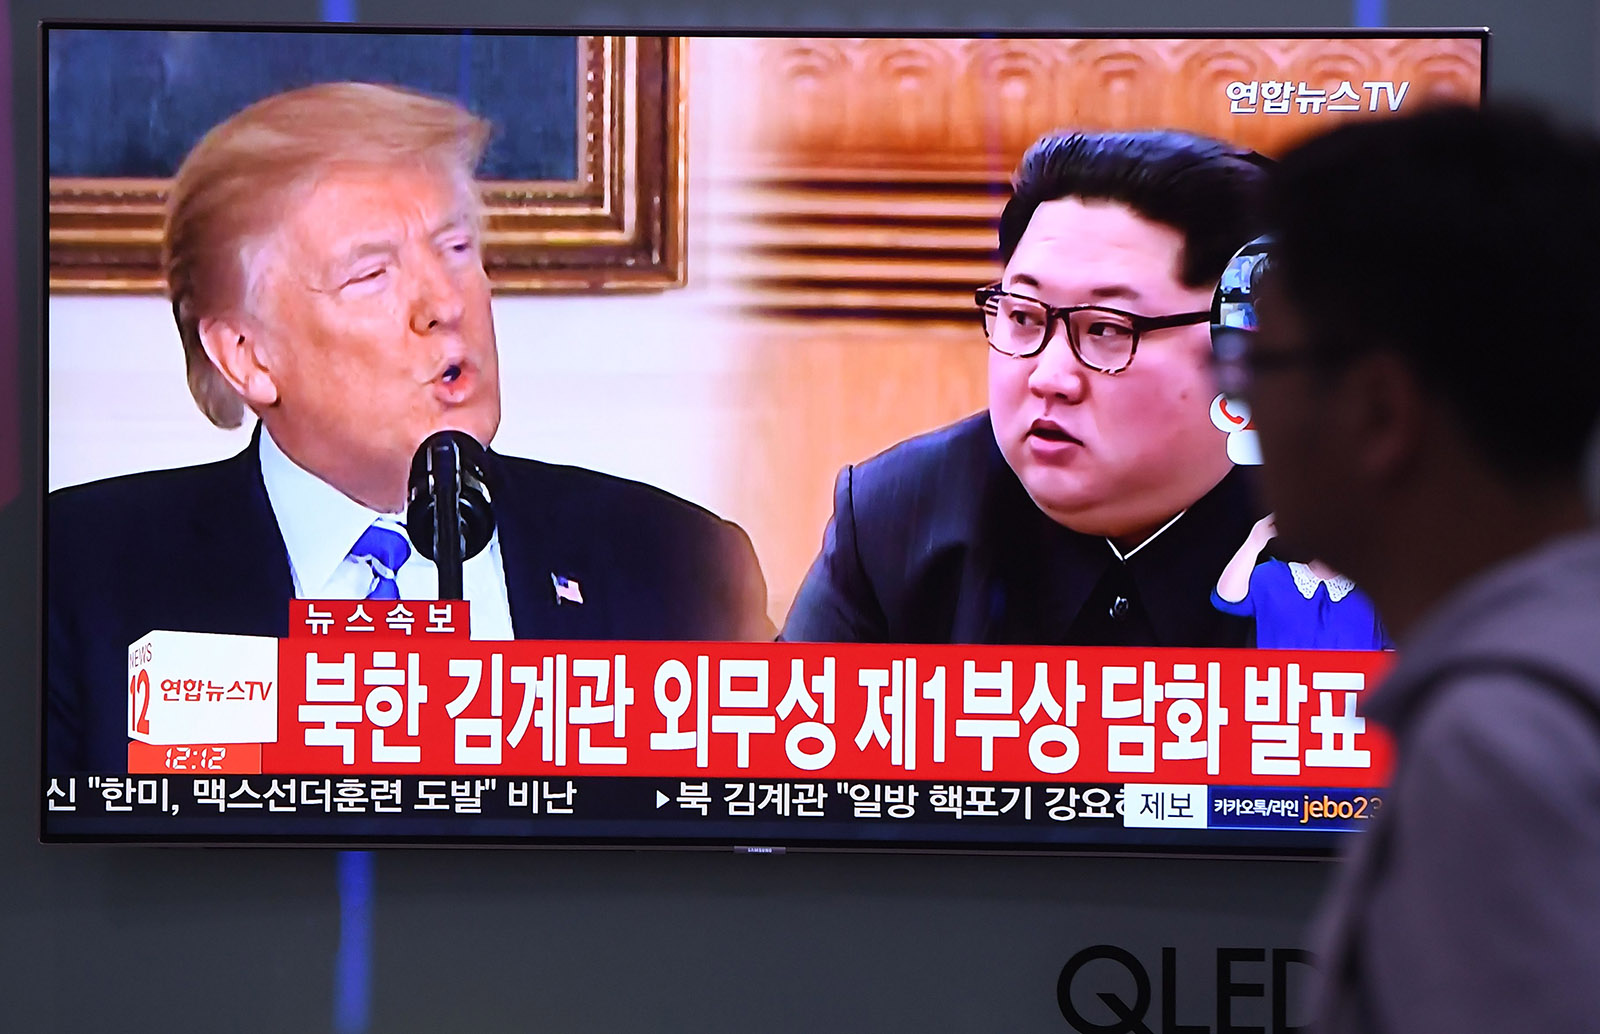 Trump–Kim Nuclear Theatrics